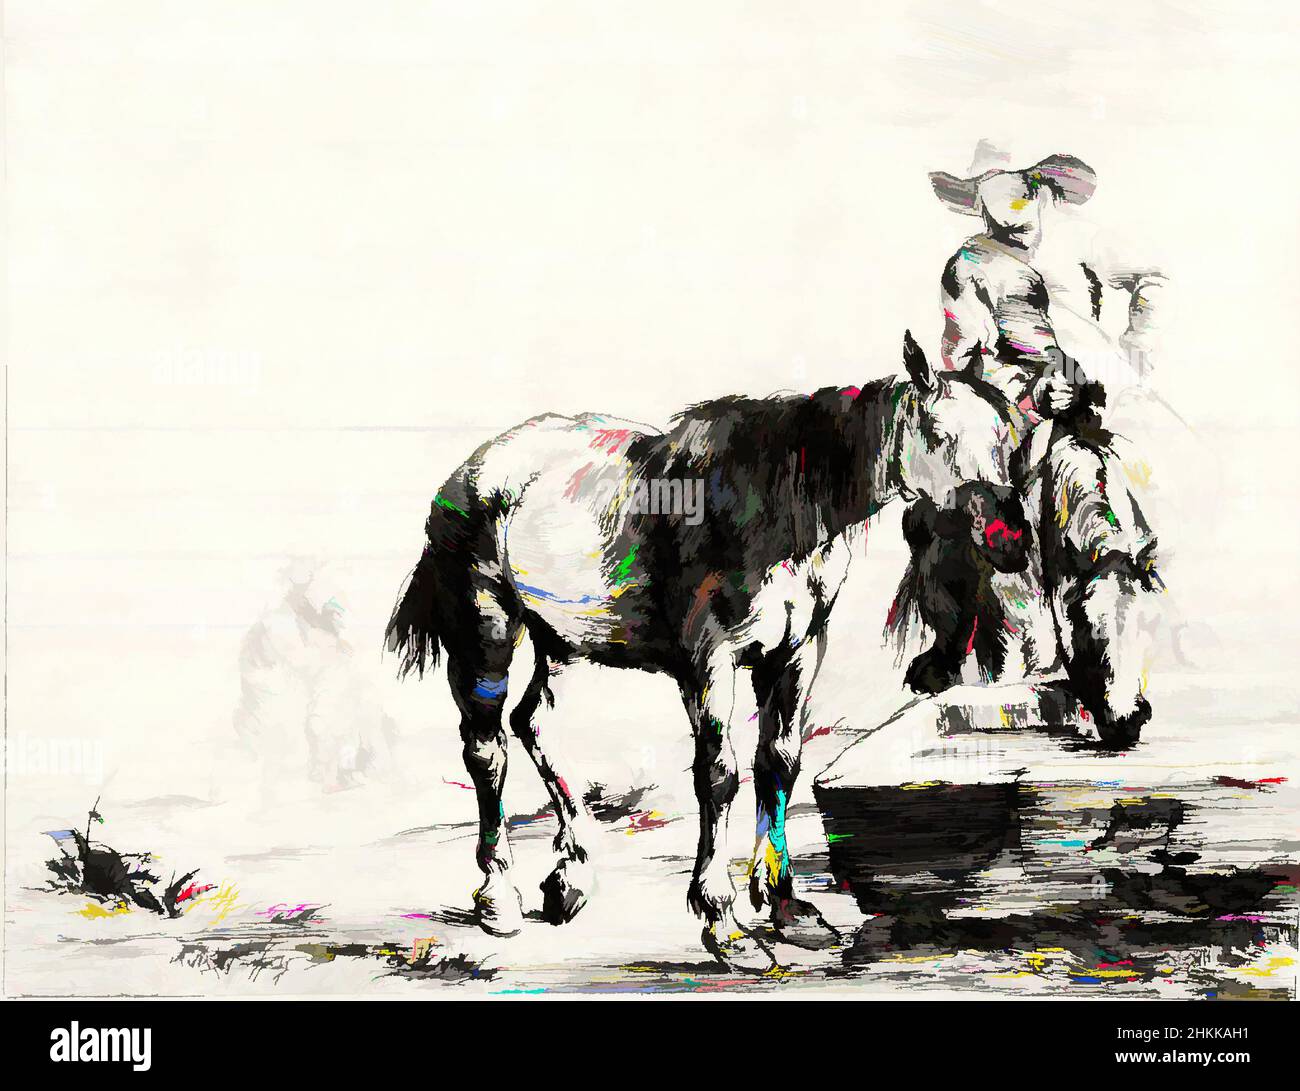 Kunst inspiriert von zwei Pferden an einem Trog, #8 aus der Suite: Zwölf Pferderassen, Dirk Stoop, Niederländisch, 1610-1686, Radieren, 1651, Blatt: 6 5/16 x 8 1/16 Zoll, 16 x 20,5 cm, Klassisches Werk, modernisiert von Artotop mit einem Schuss Moderne. Formen, Farbe und Wert, auffällige visuelle Wirkung auf Kunst. Emotionen durch Freiheit von Kunstwerken auf zeitgemäße Weise. Eine zeitlose Botschaft, die eine wild kreative neue Richtung verfolgt. Künstler, die sich dem digitalen Medium zuwenden und die Artotop NFT erschaffen Stockfoto